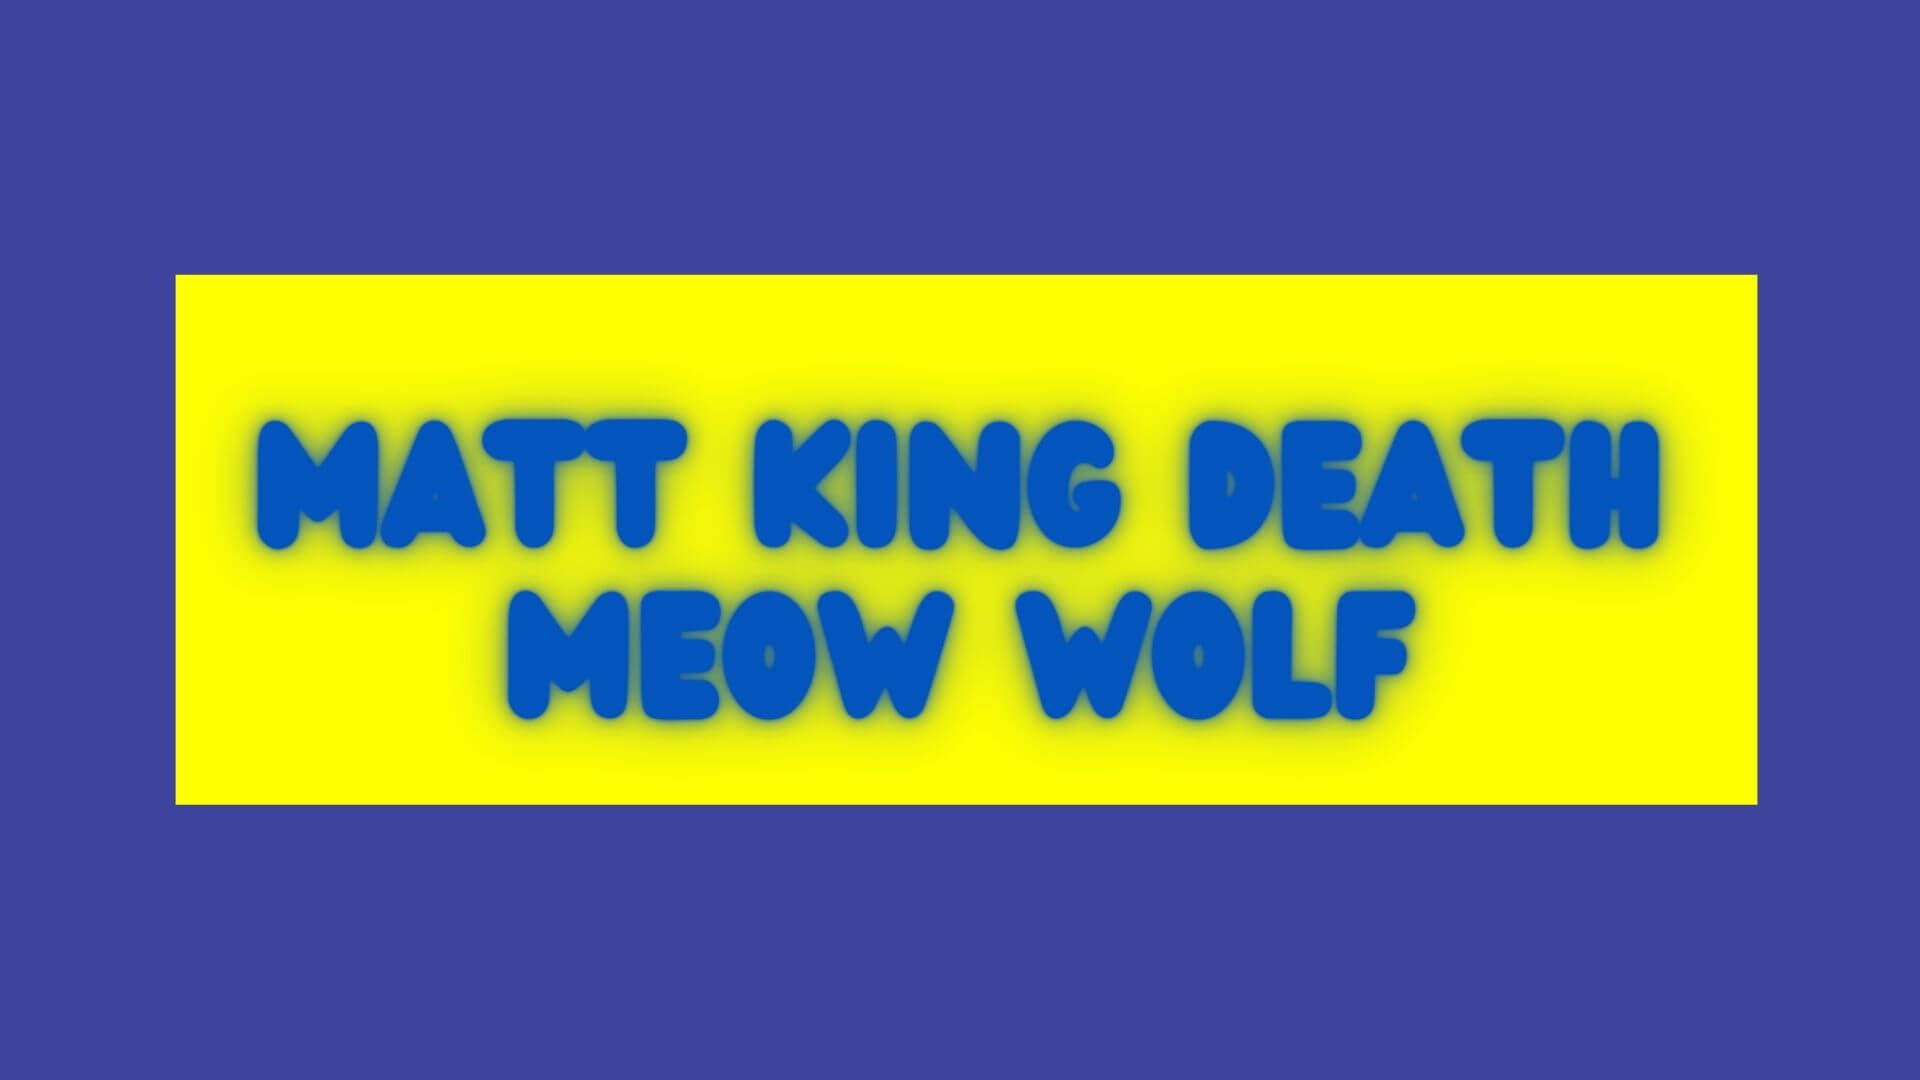 Matt King Death Meow Wolf